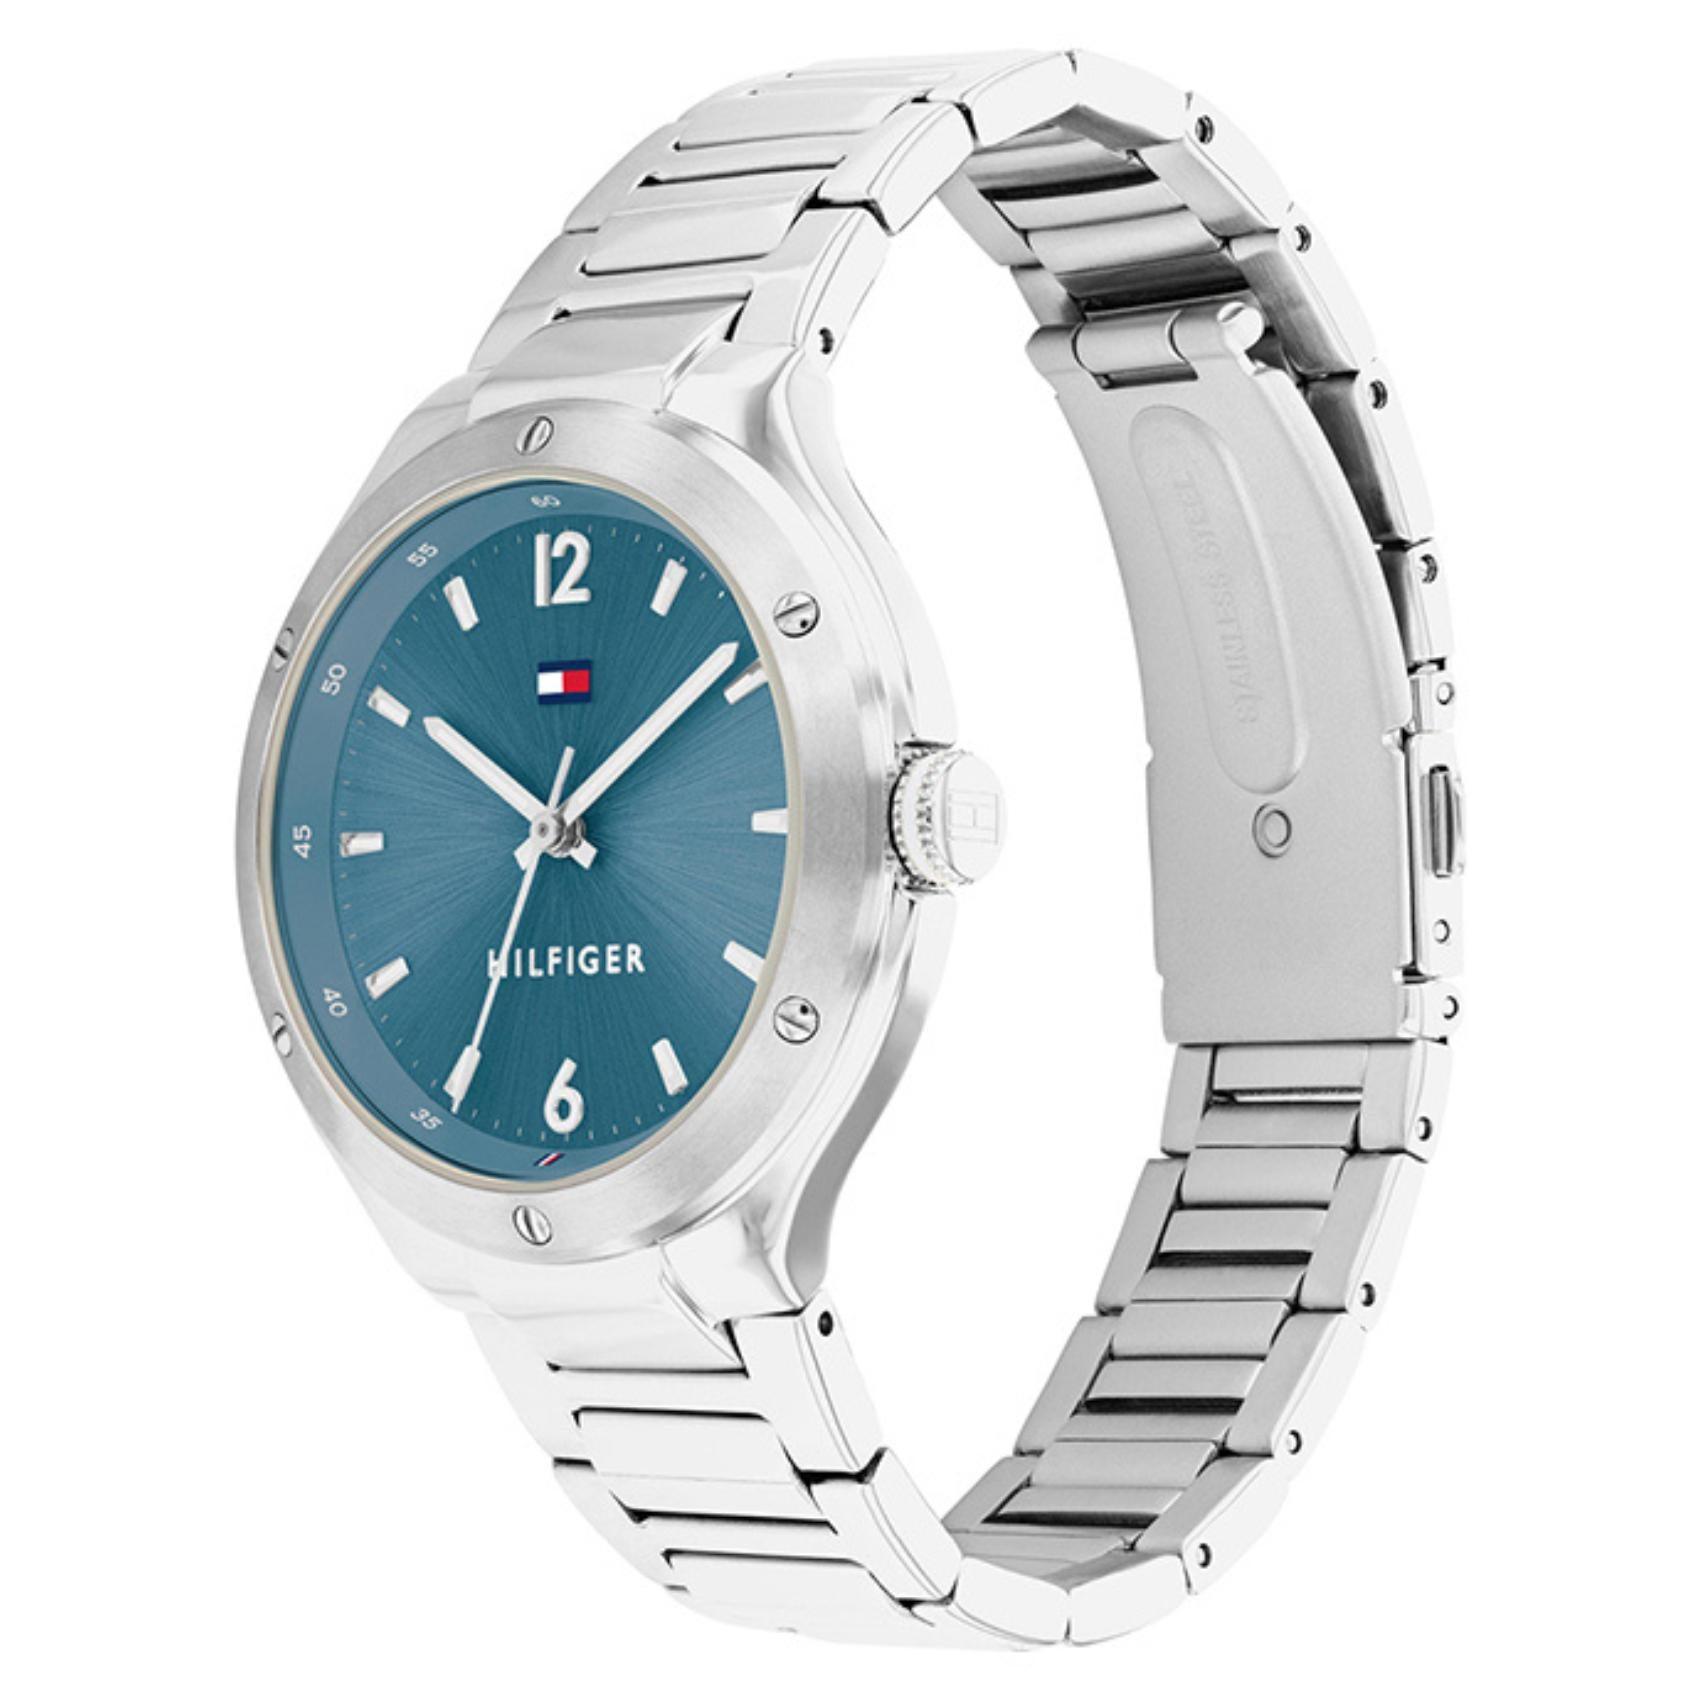 Γυναικείο ρολόι Tommy Hilfiger Naomi 1782475 με ασημί ατσάλινο μπρασελέ και μπλε καντράν διαμέτρου 37mm.